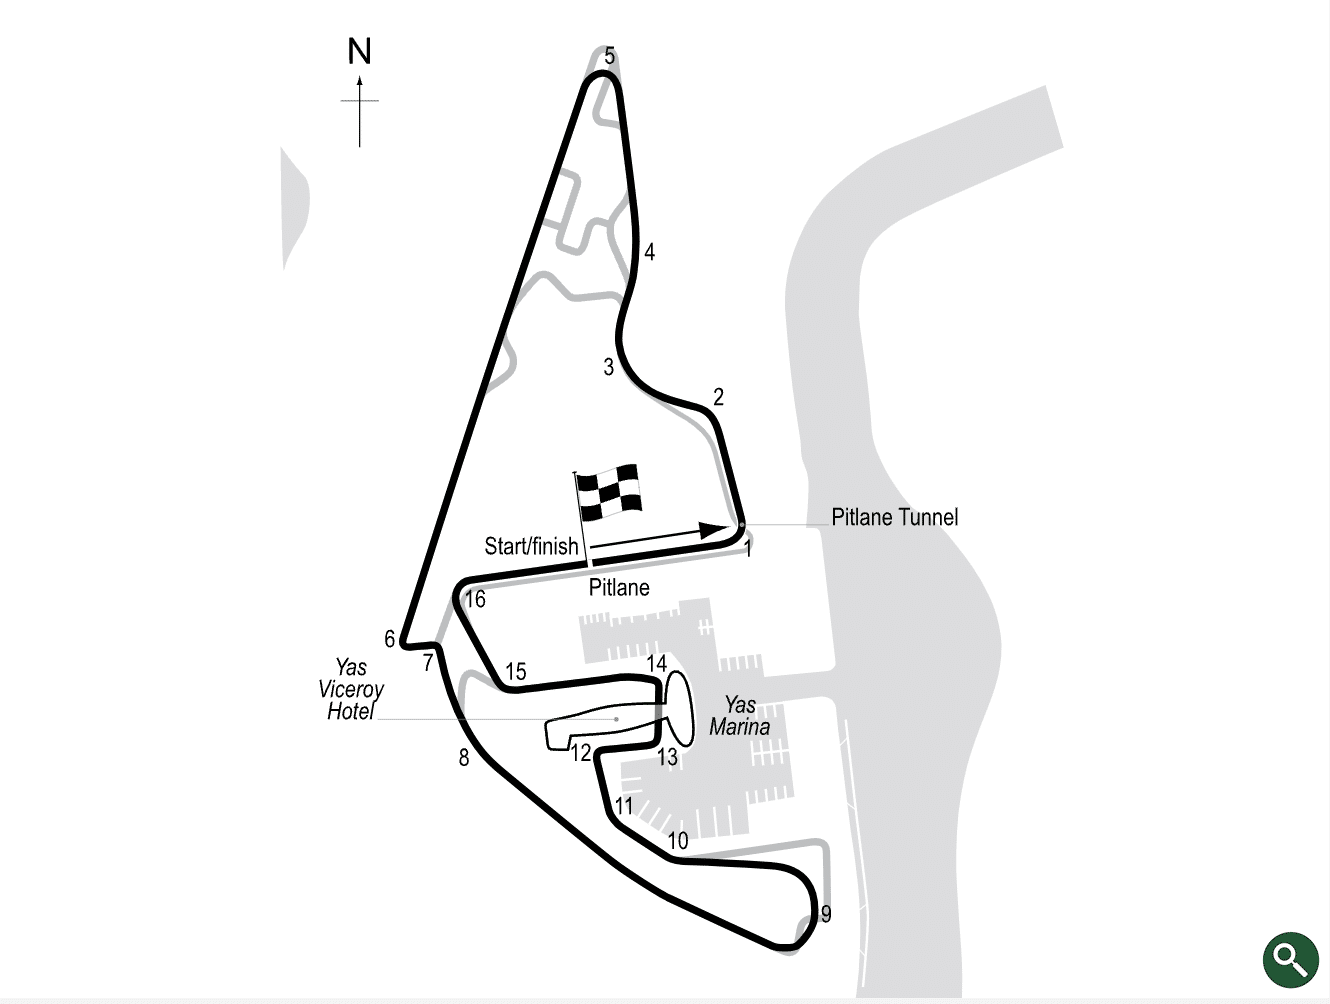 Yas Marina circuit map